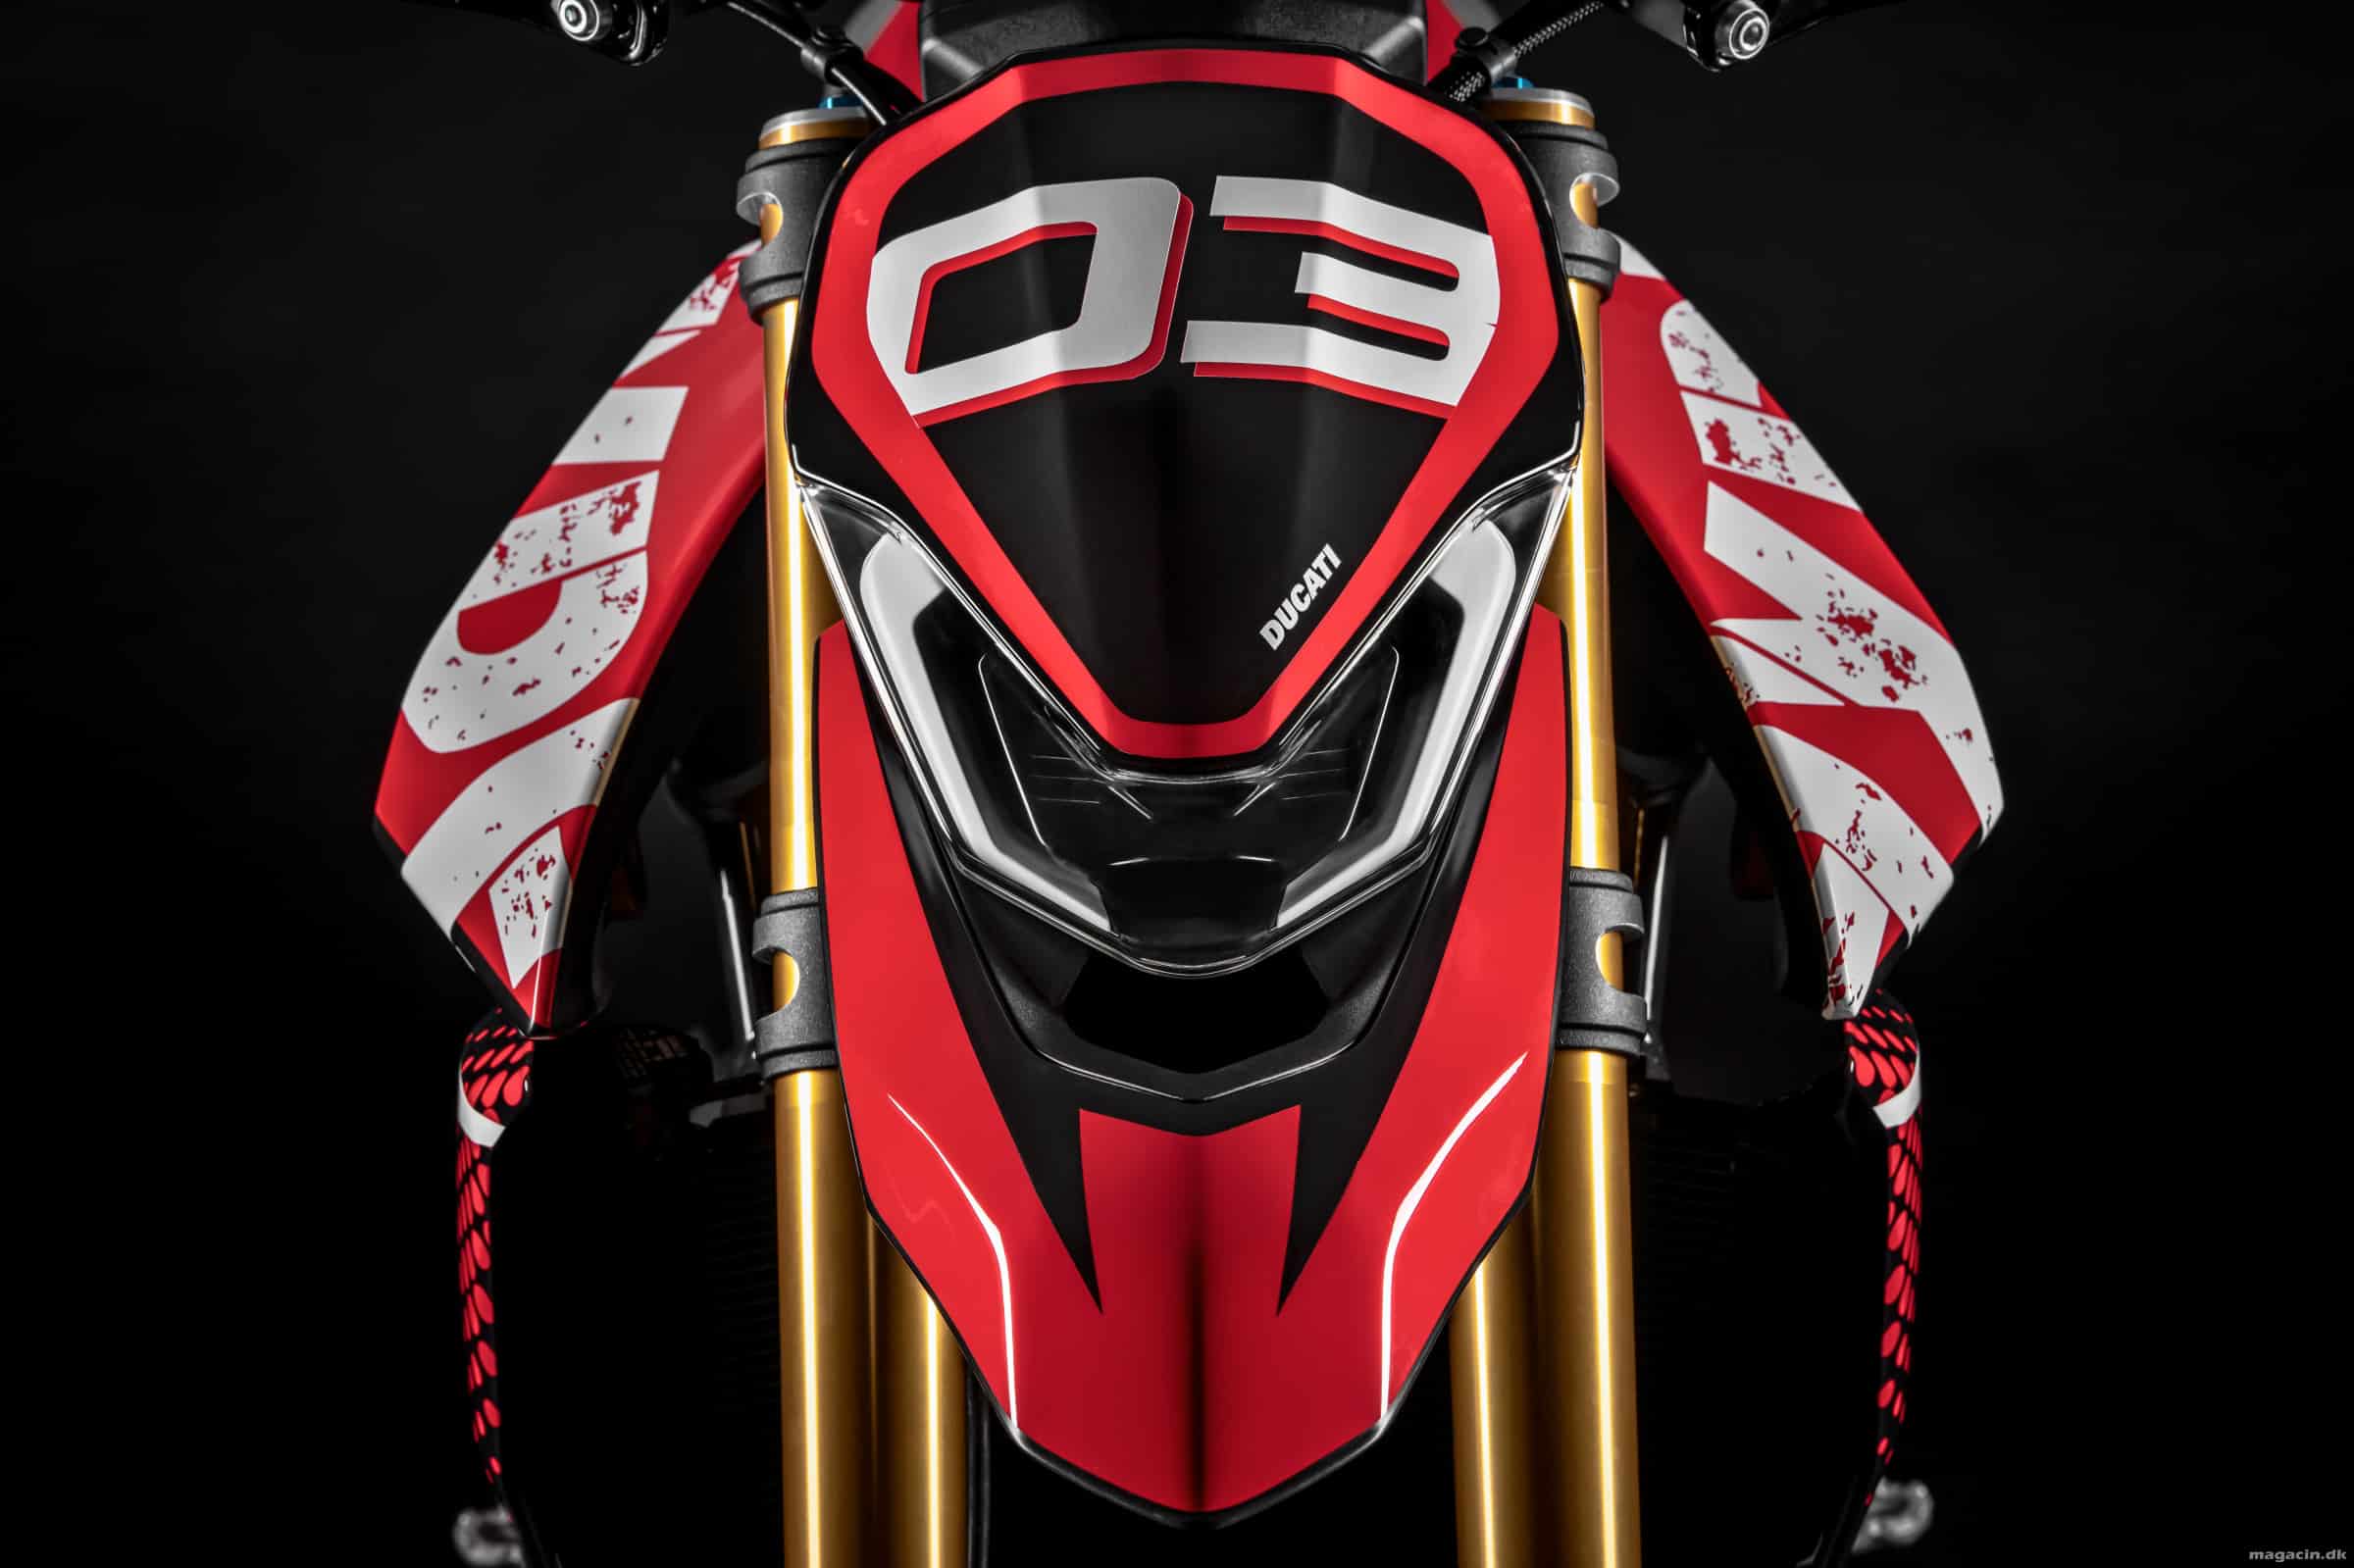 Led Ducati Konceptkværn